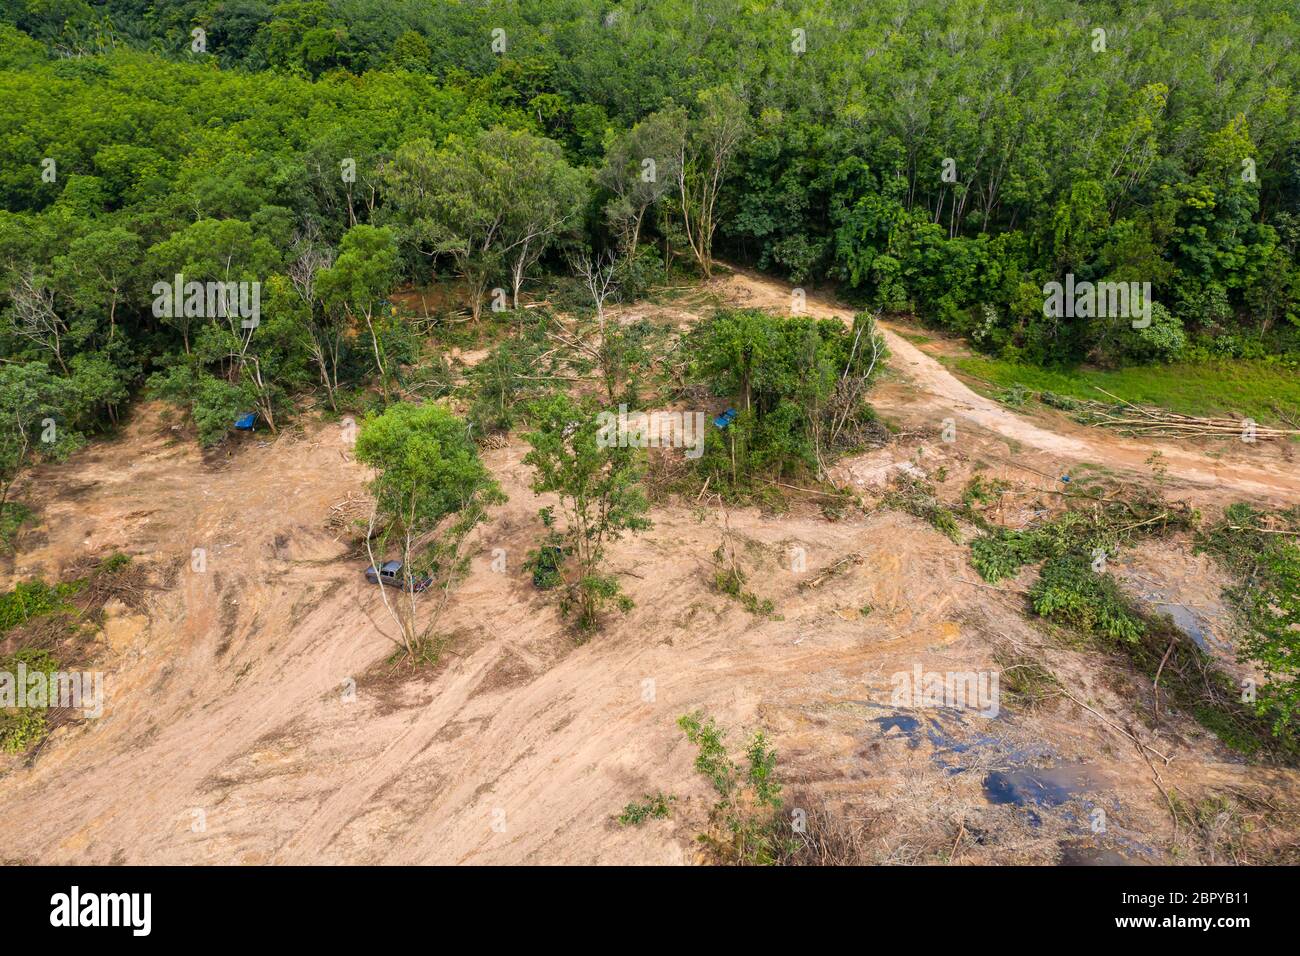 Vue aérienne de la déforestation d'une forêt tropicale pour faire place à l'exploitation forestière et aux plantations d'huile de palme contribuant au changement climatique et aux warmi mondiaux Banque D'Images